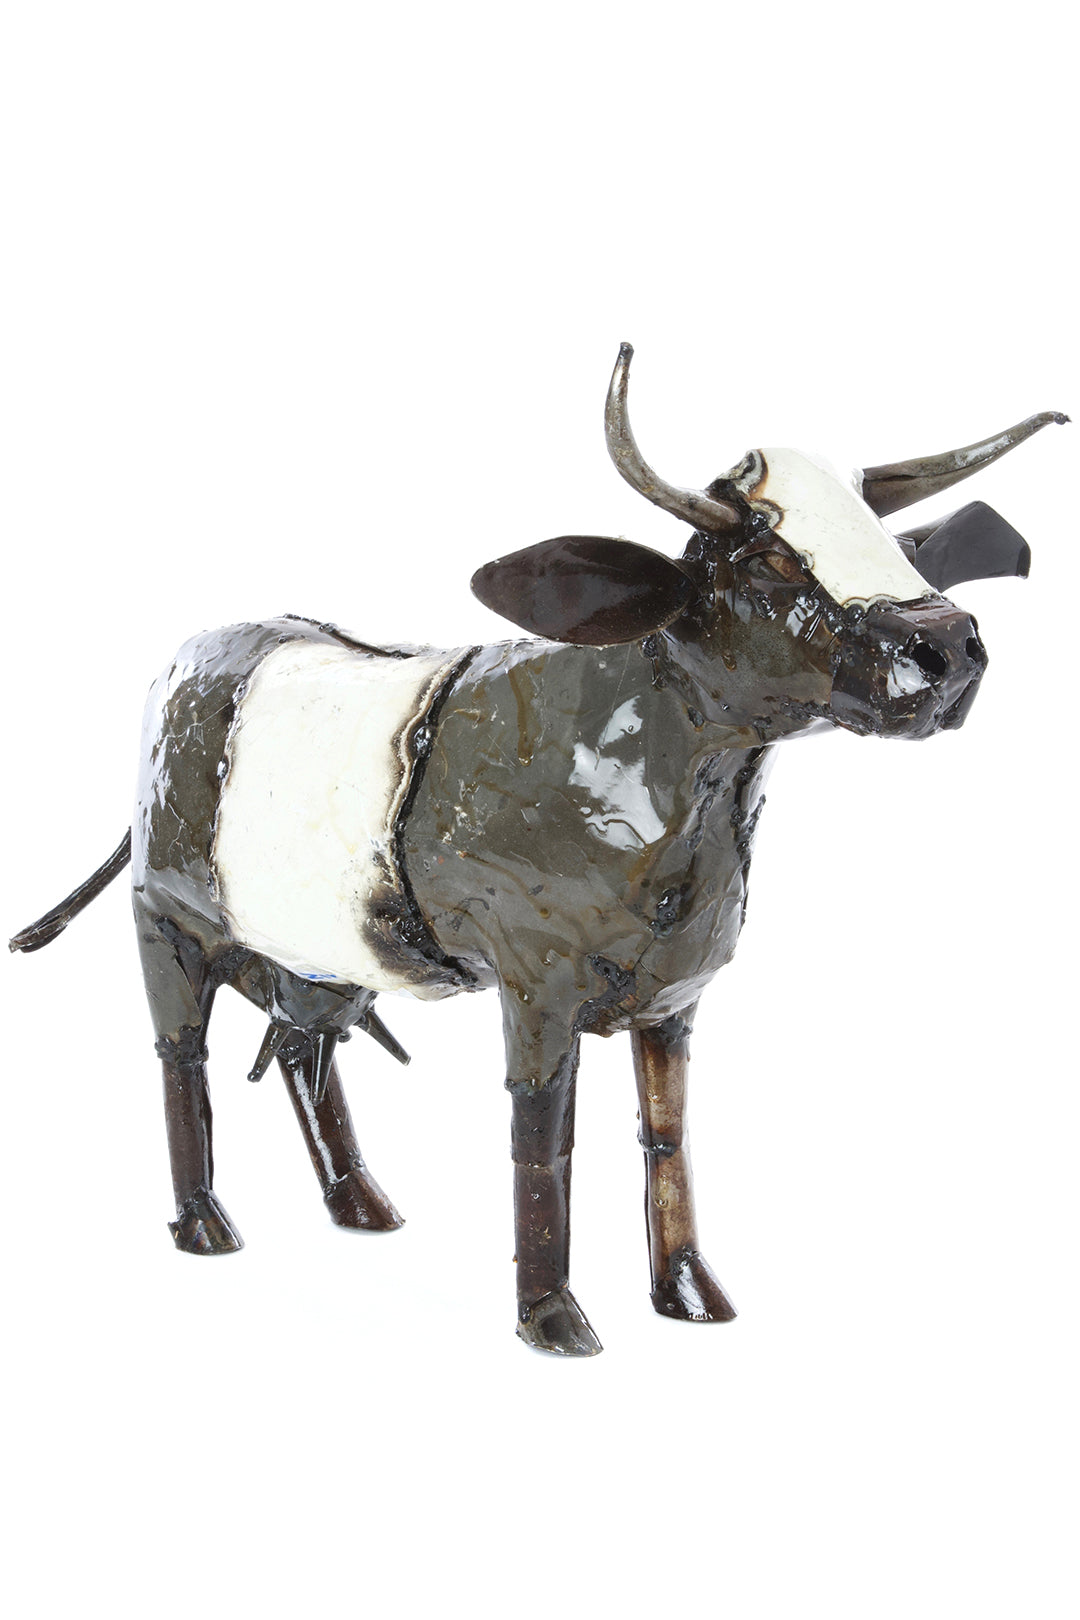 Recycled Oil Drum Milk Cow Sculptures Medium Oil Drum Cow Sculpture